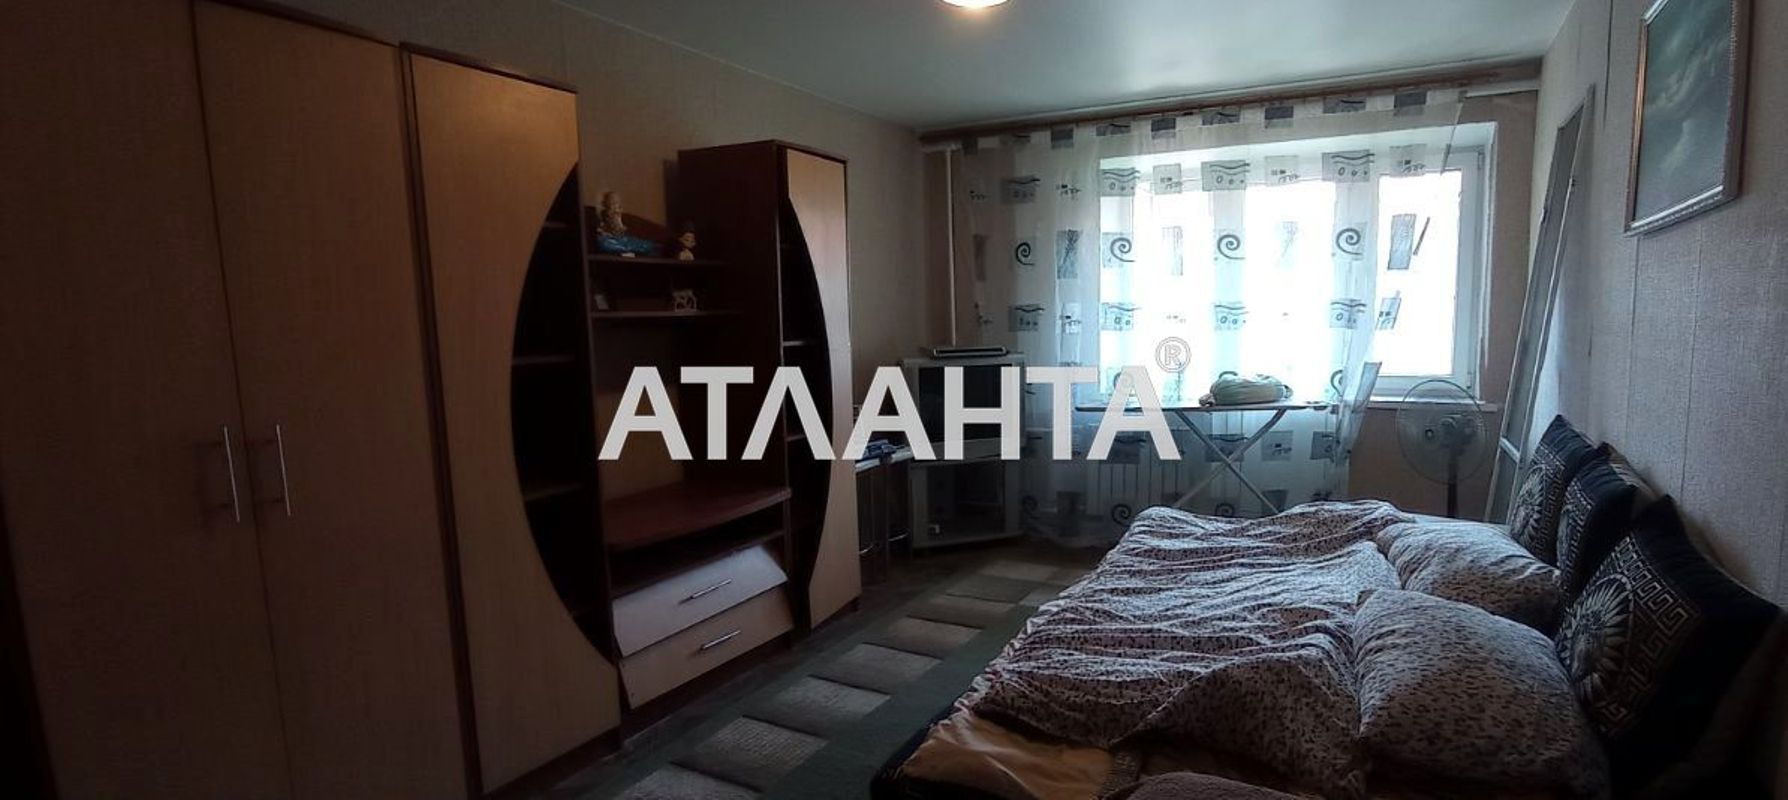 2-х кімн.квартира у Сталинці на вул. Балтська дорога р-н Суворовський.